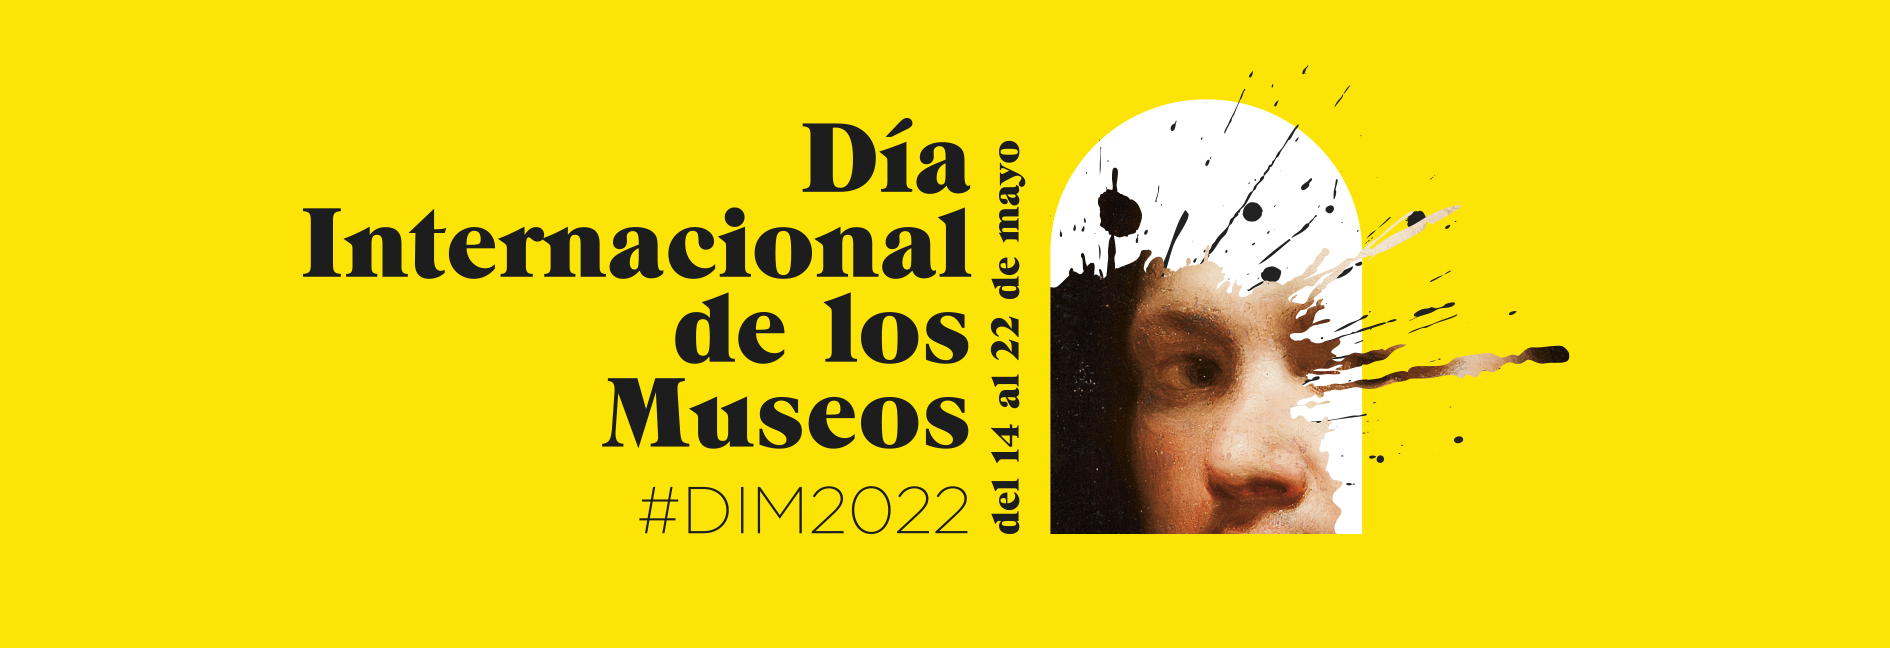 Día Internacional de los museos 2022